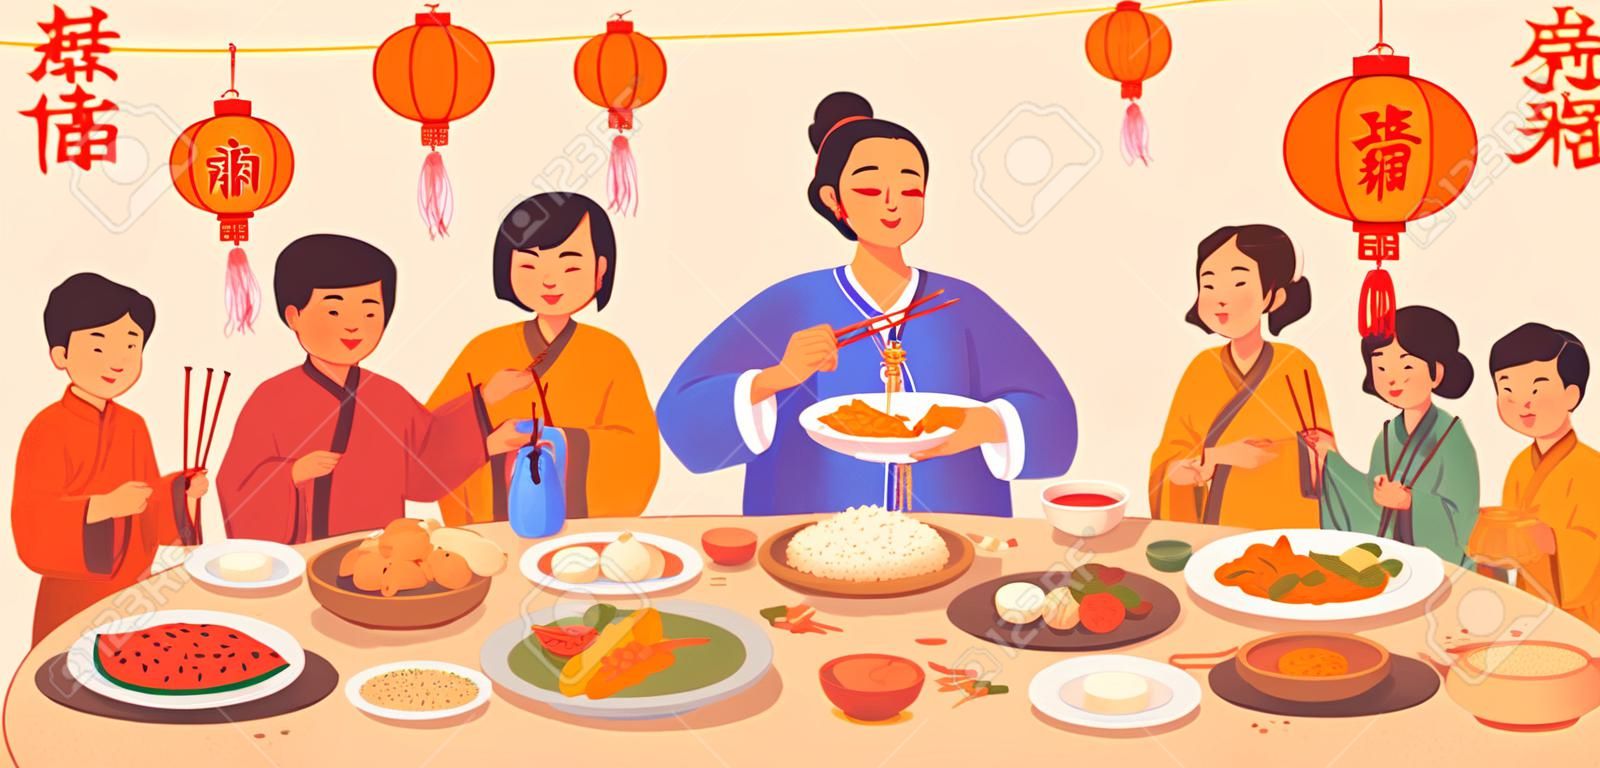 Traduction de texte du Nouvel An chinois, dîner de gala avec de la nourriture sur des assiettes et des mains de personnes tenant des baguettes, décoration de lanternes rouges. Plats de cuisine traditionnelle chinoise, poisson et riz, boulettes, légumes